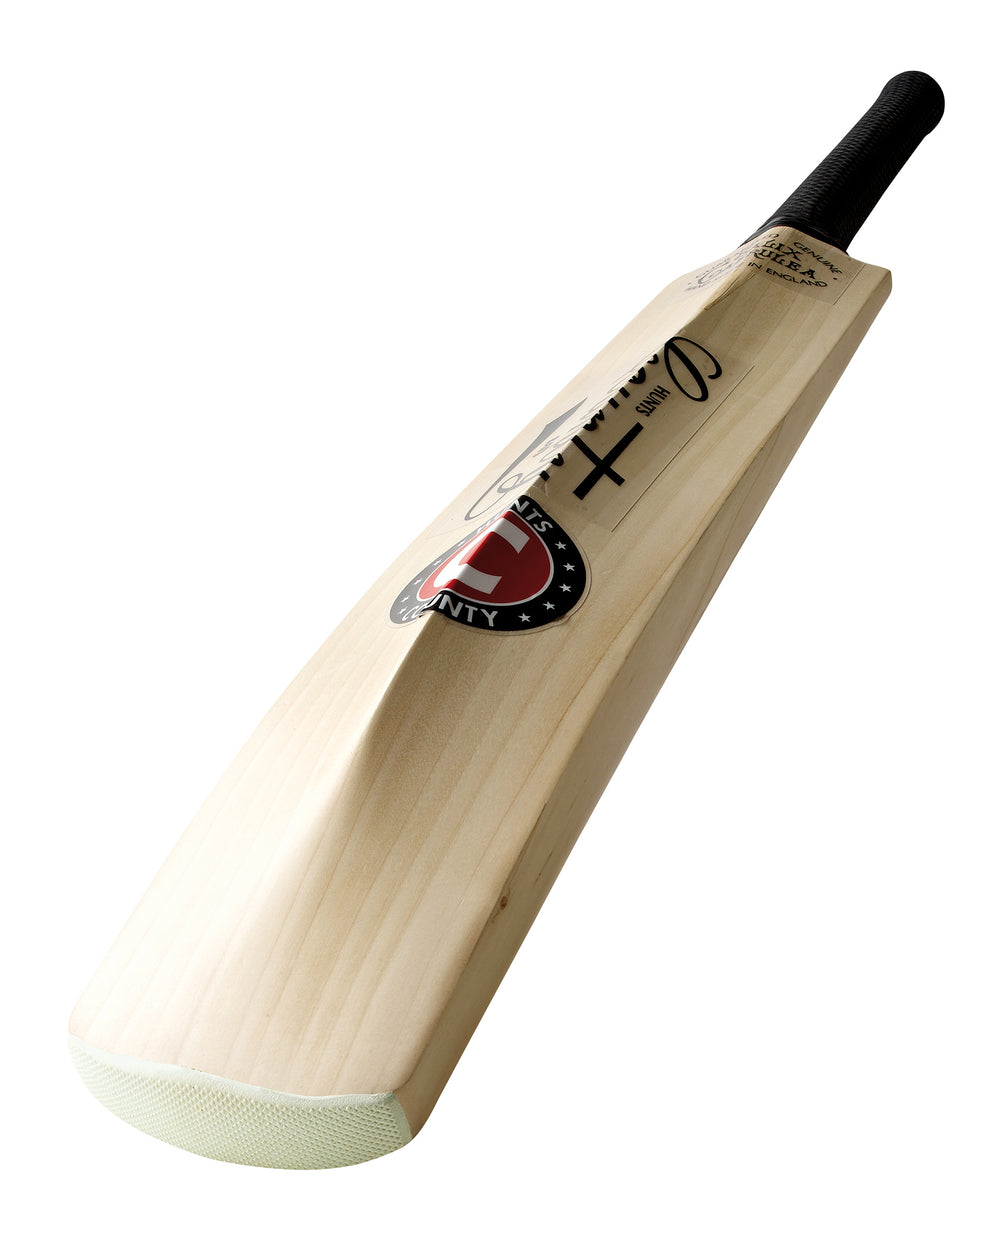 Hunts County Caerulex Super Select Junior Cricket Bat